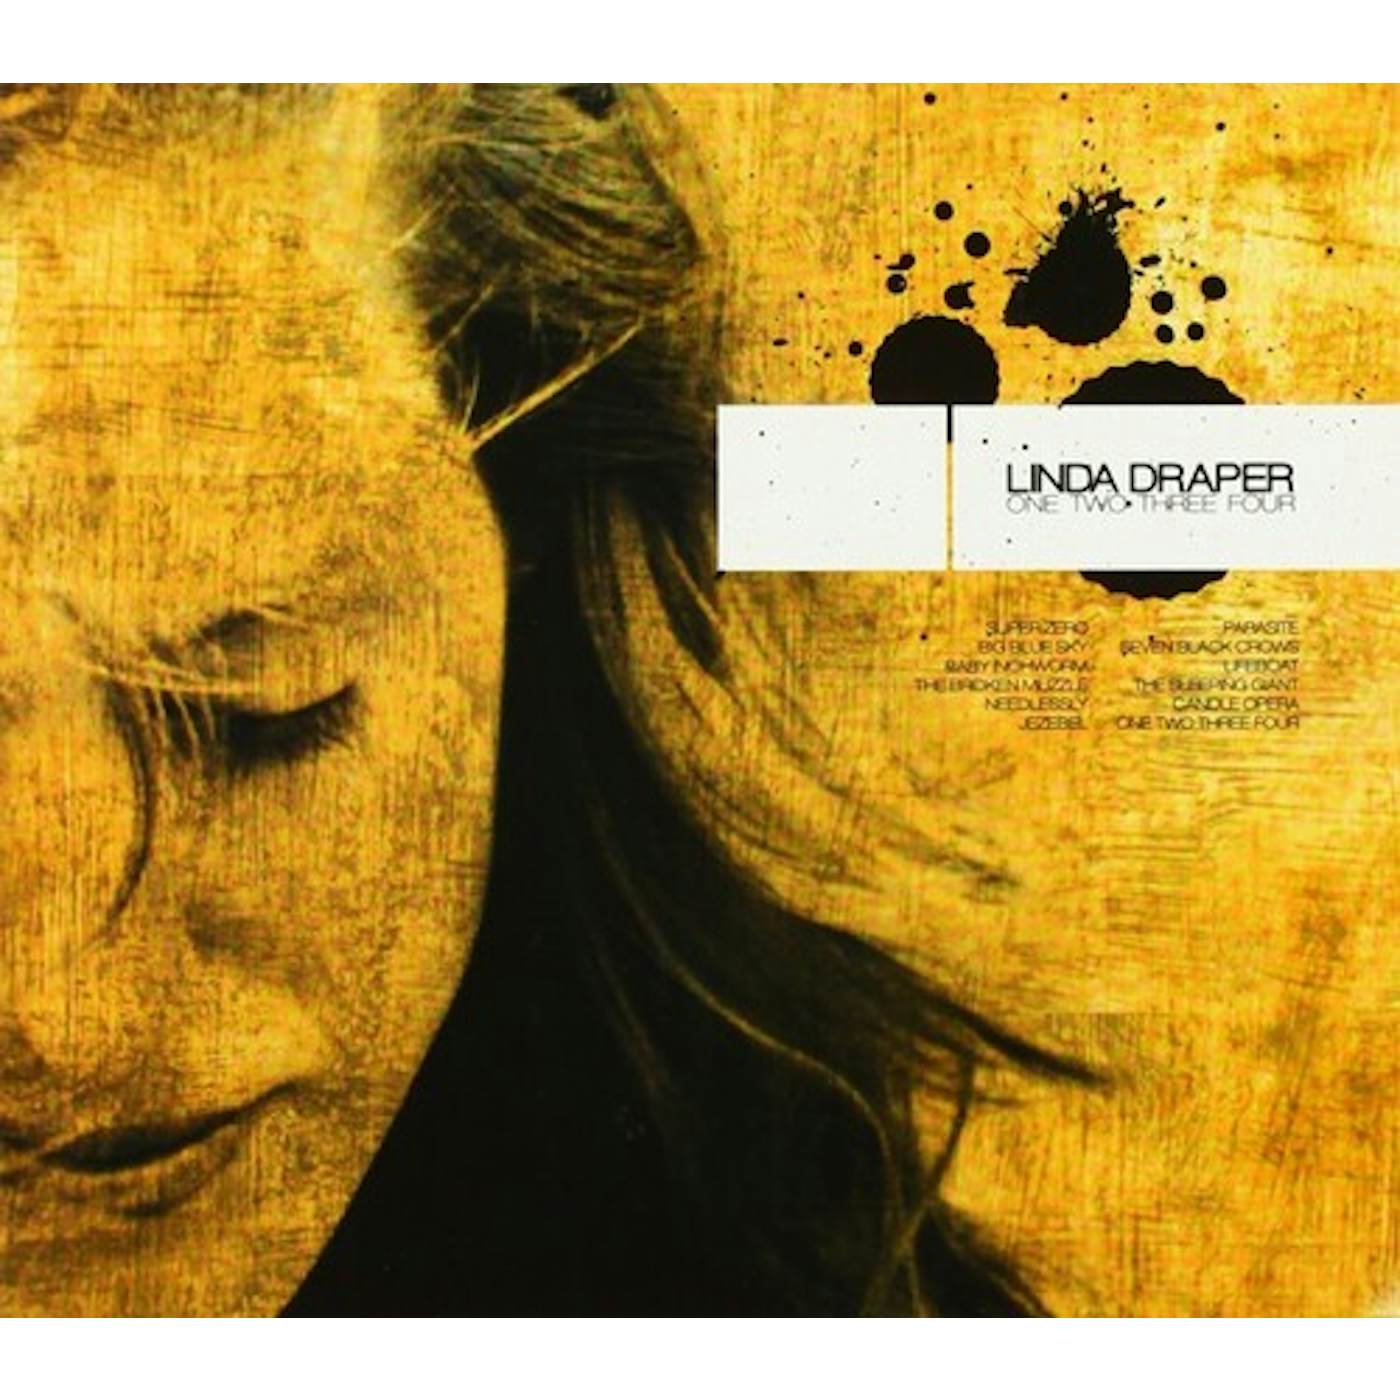 LINDA DRAPER ONE TWO THREE FOUR CD